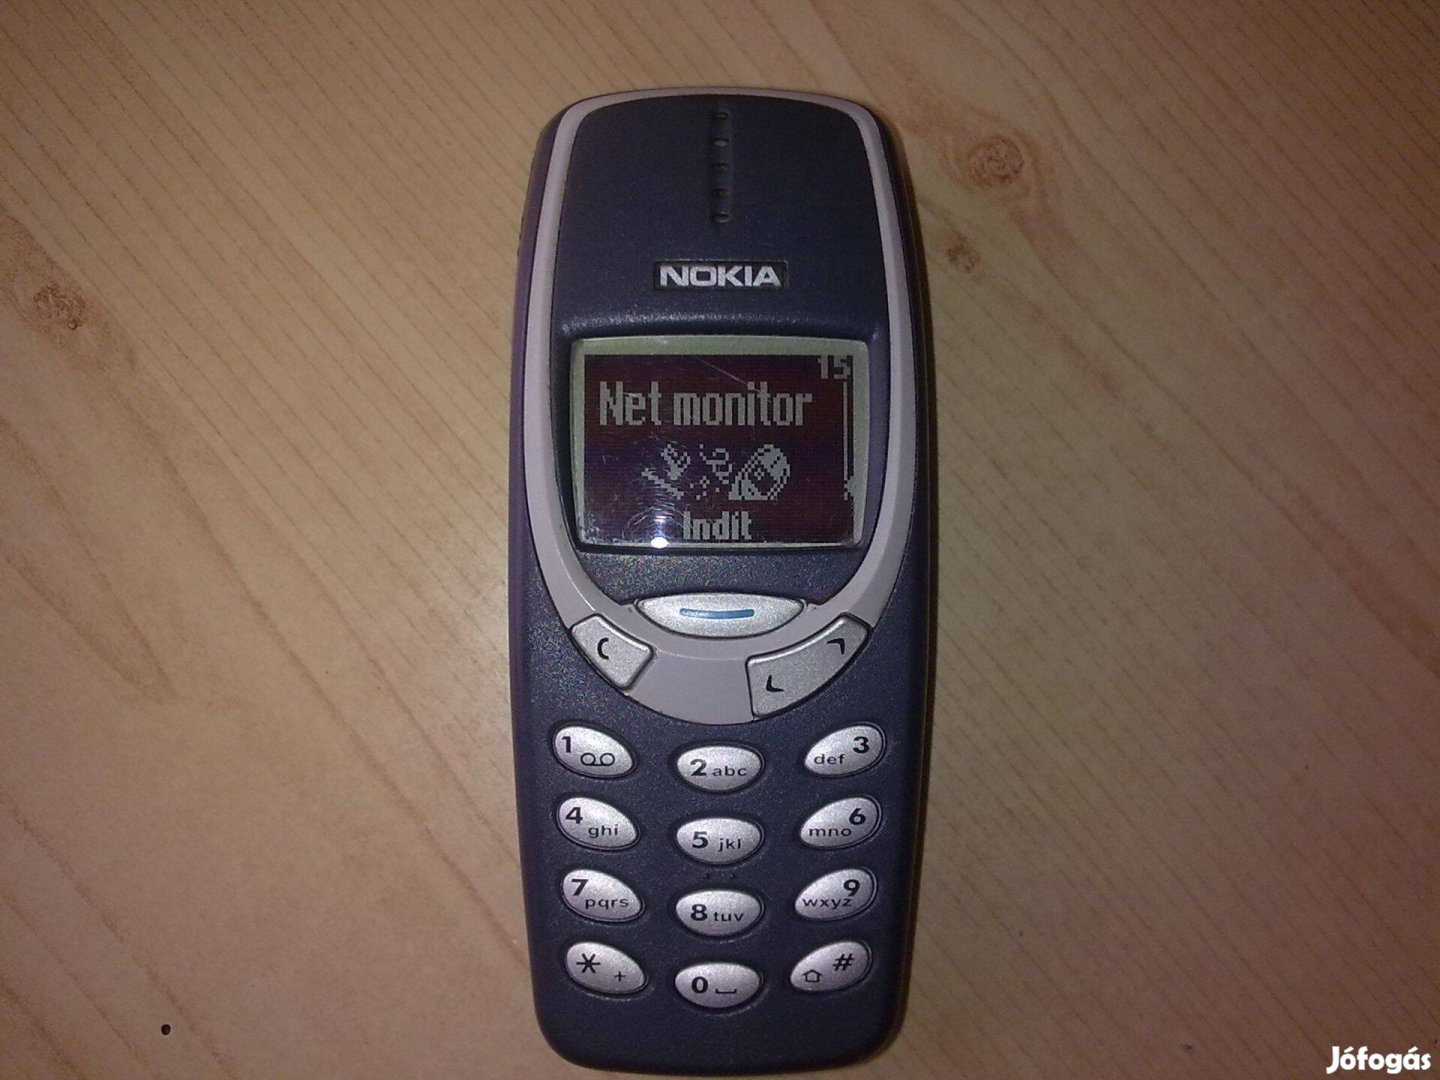 Nokia 3310 egyedi menüvel, inverz kijelző hívás idő kijelzés stb